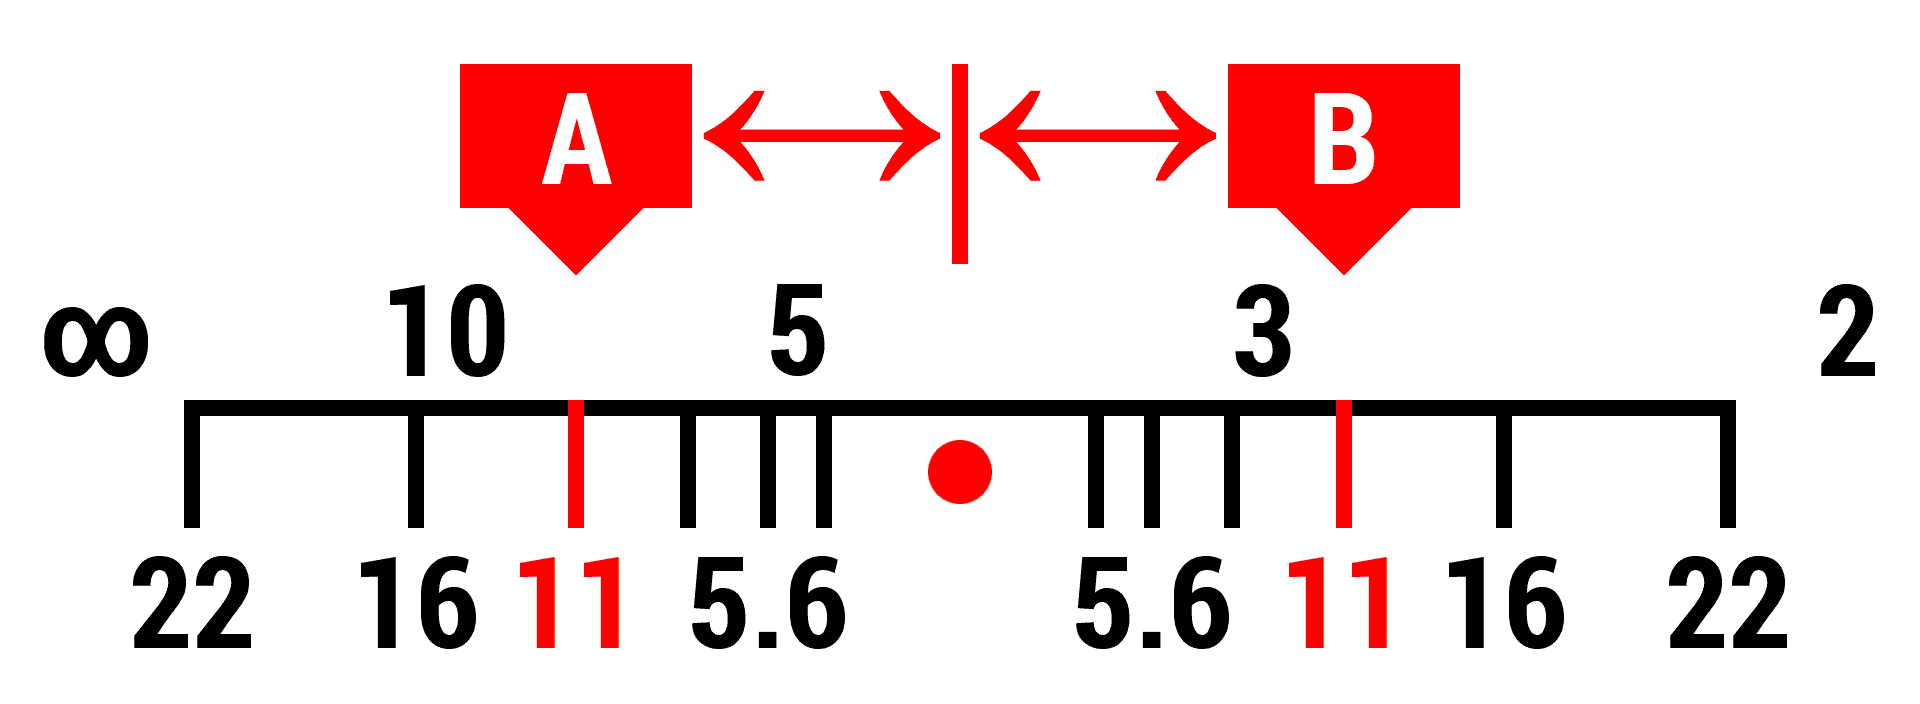 Mise au point à égale distance de A et de B.